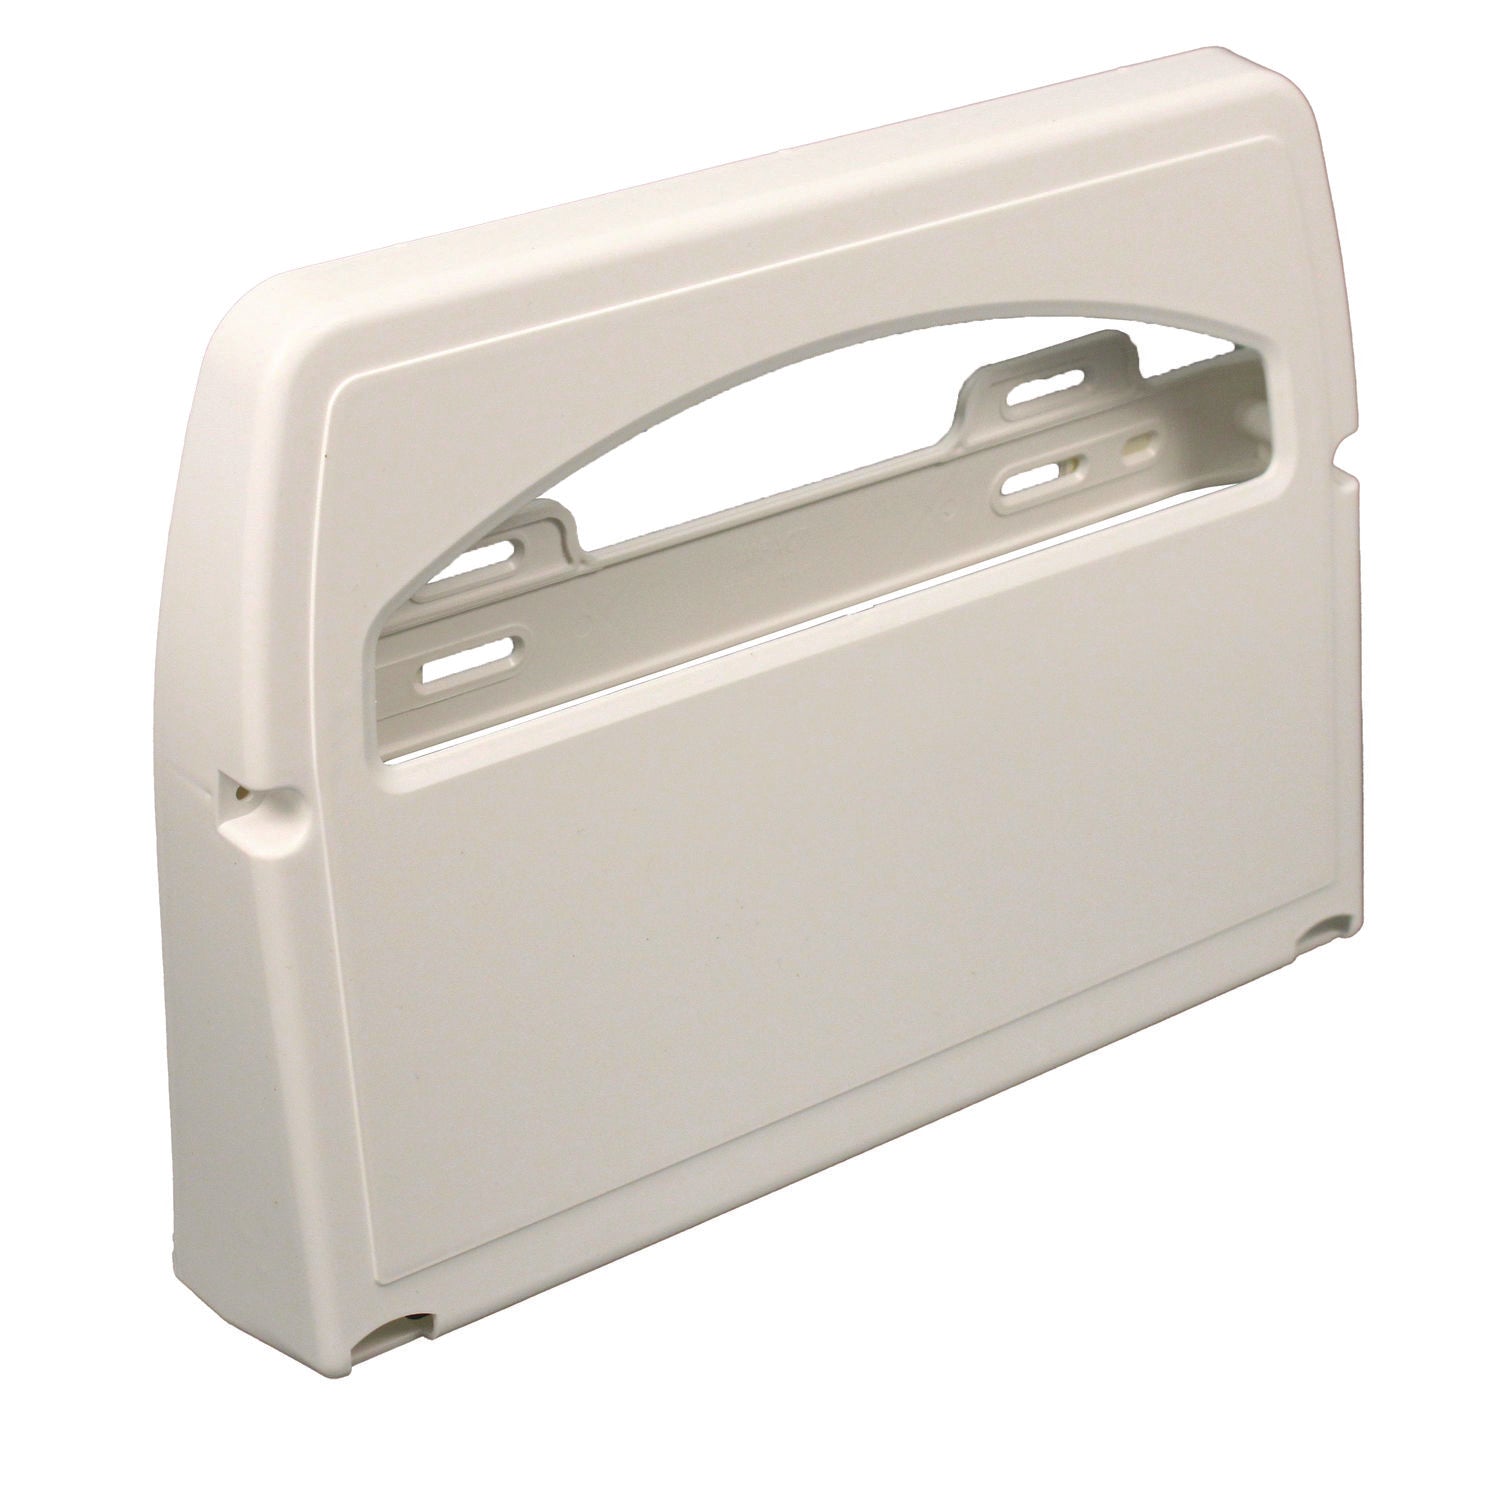 toilet-seat-cover-dispenser-164-x-305-x-119-white-2-carton_imp1120ct - 3